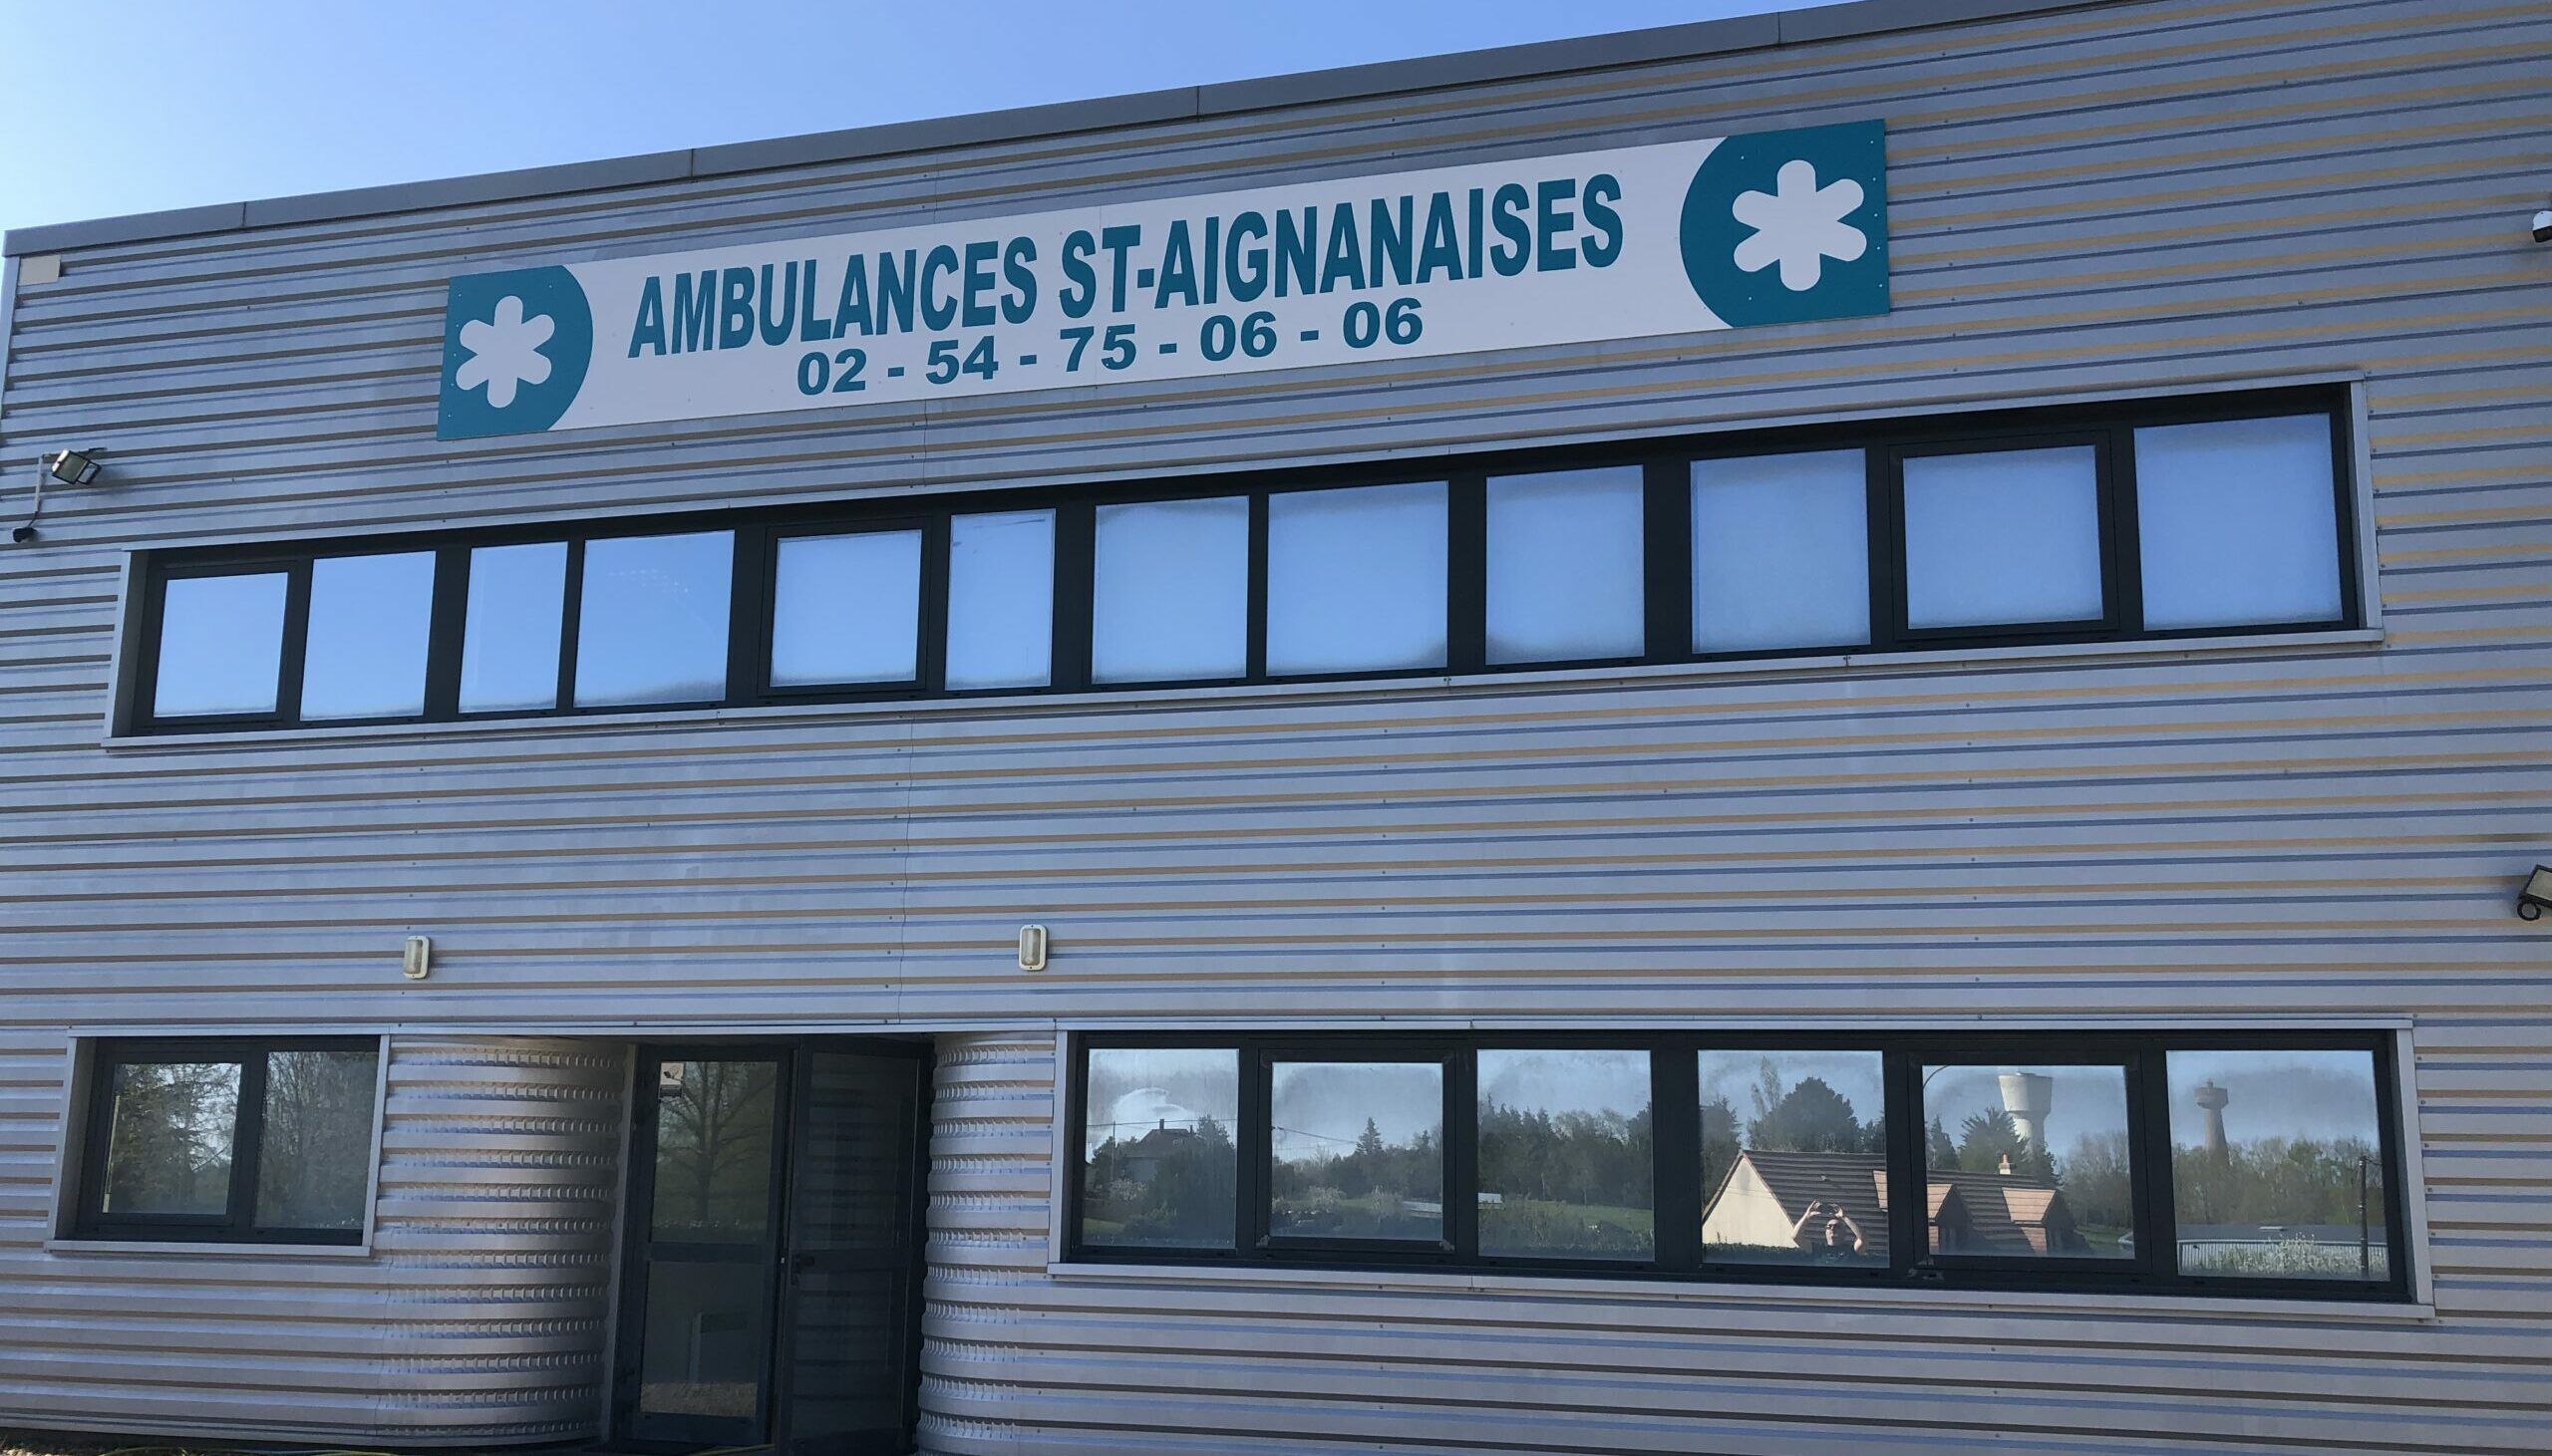 Ambulances Saint-Aignanaises